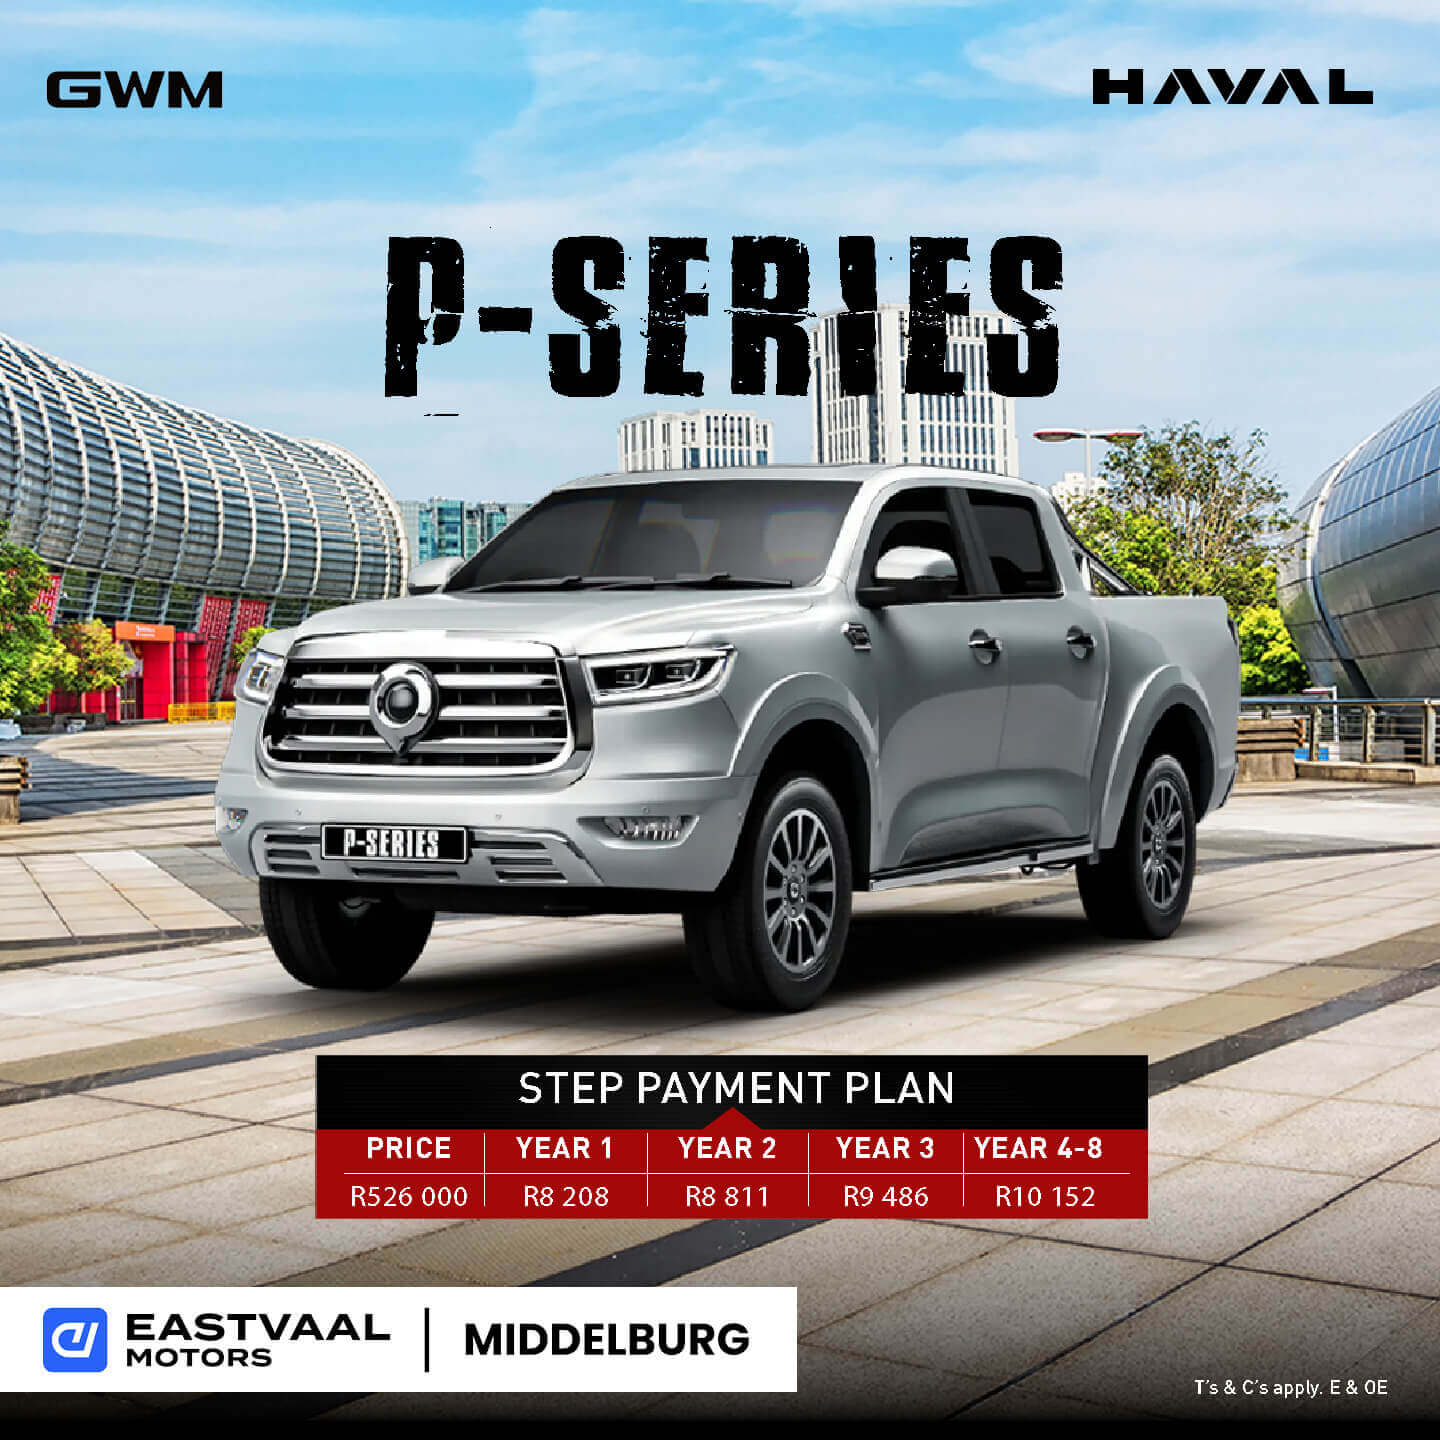 HAVAL P-SERIES image from Eastvaal Motors